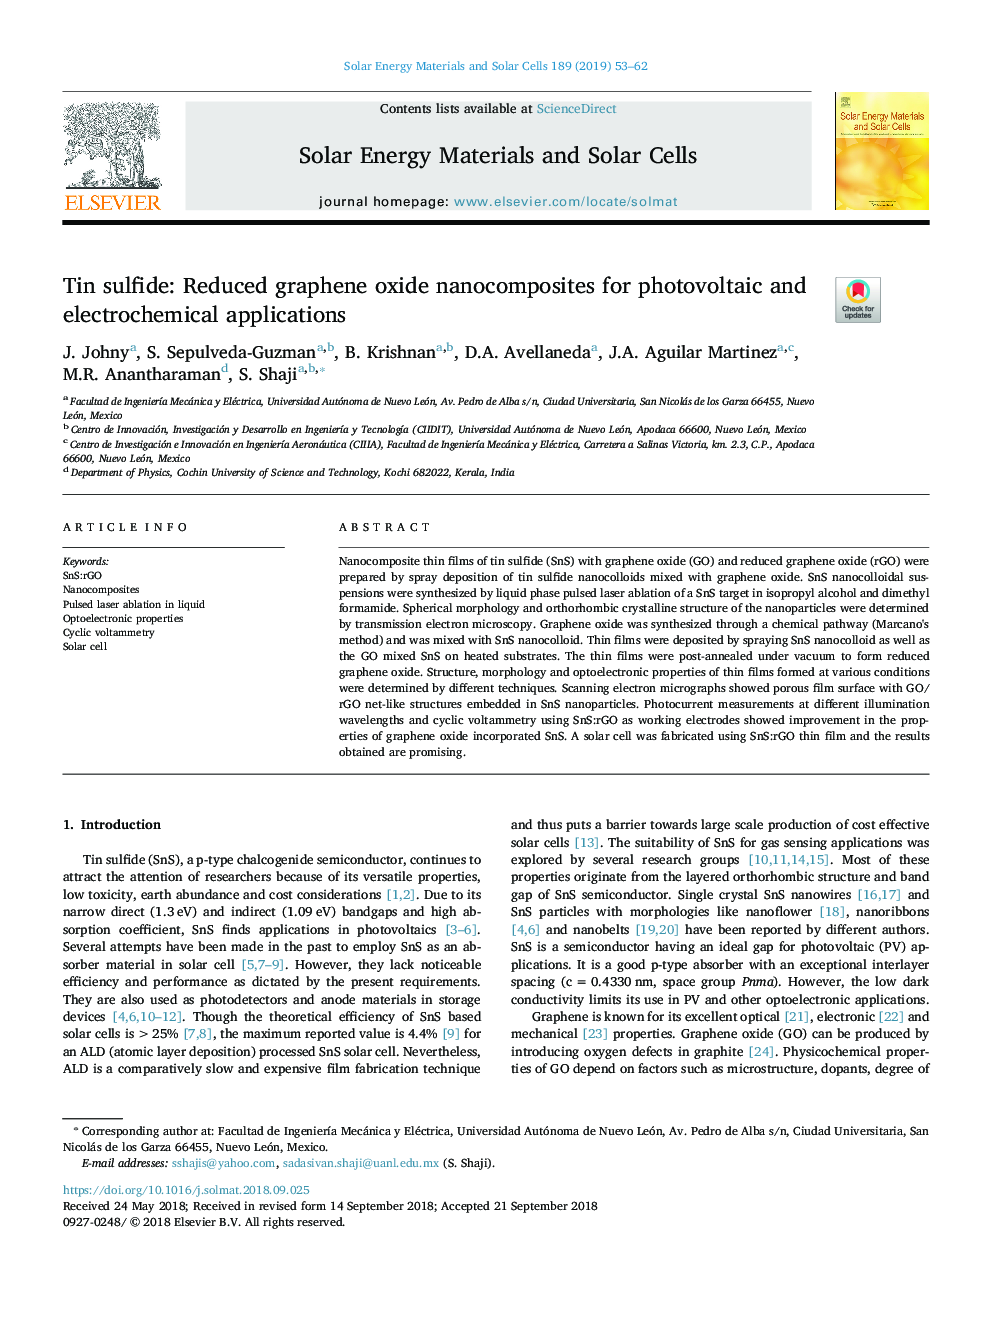 سولفید قلع: کاهش نانوکامپوزیت های گرافن اکسید برای کاربردهای فتوولتائیک و الکتروشیمیایی